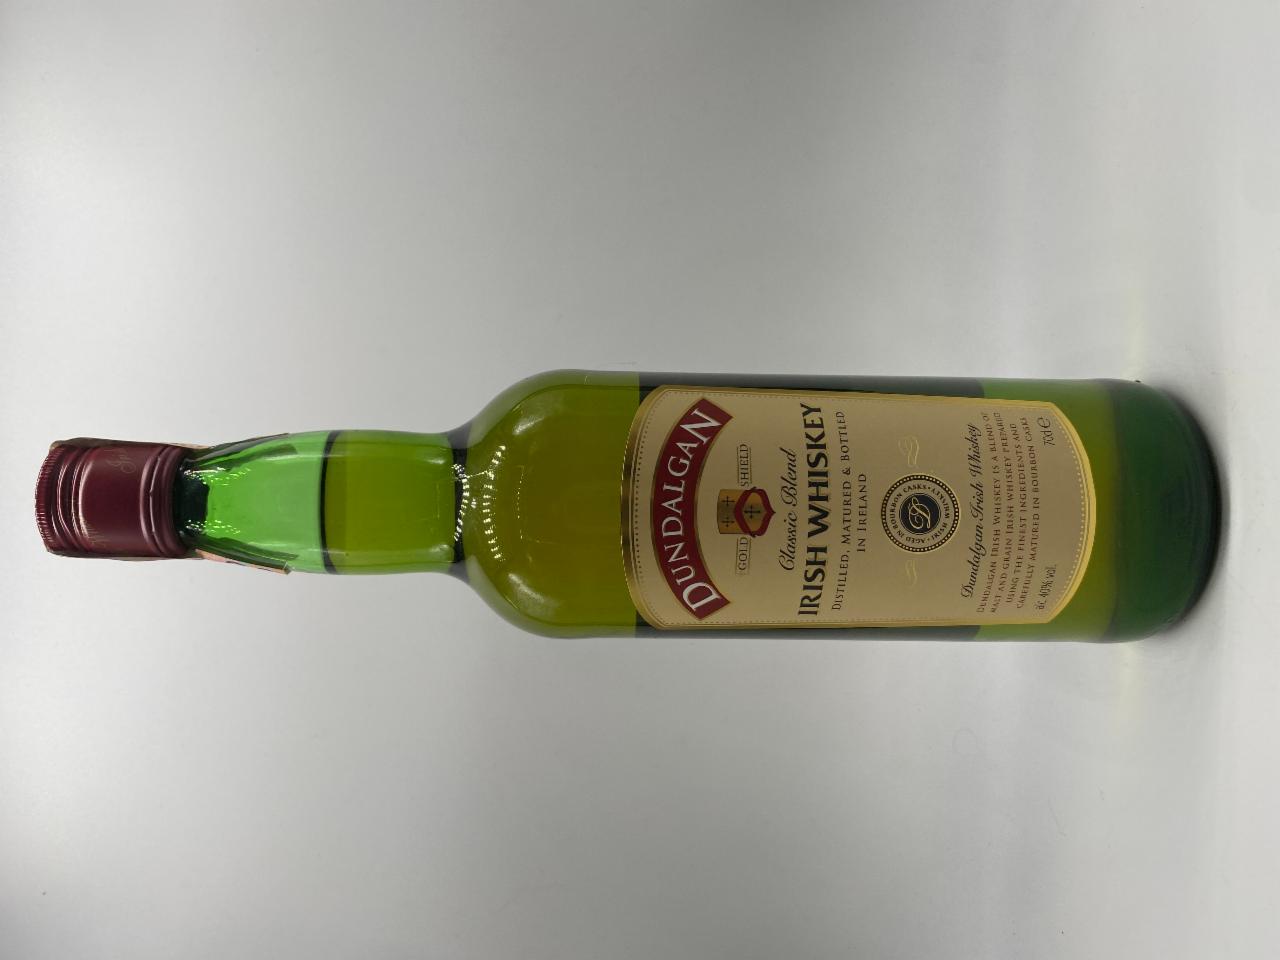 J&B scotch whisky 40% - kalorie, kJ a nutriční hodnoty